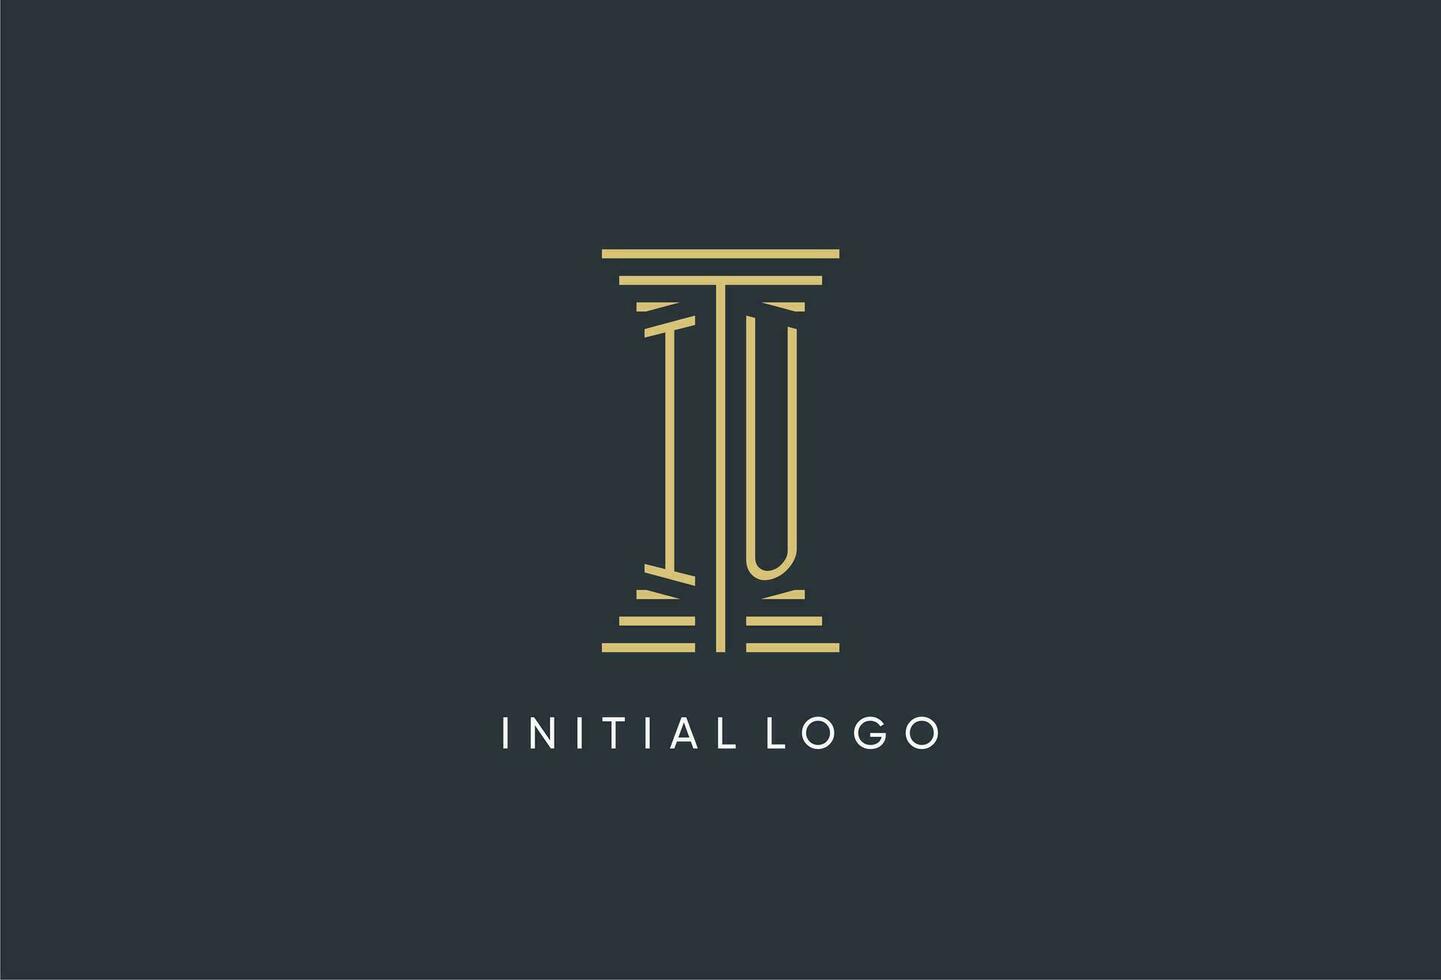 iu Initiale Monogramm mit Säule gestalten Logo Design vektor